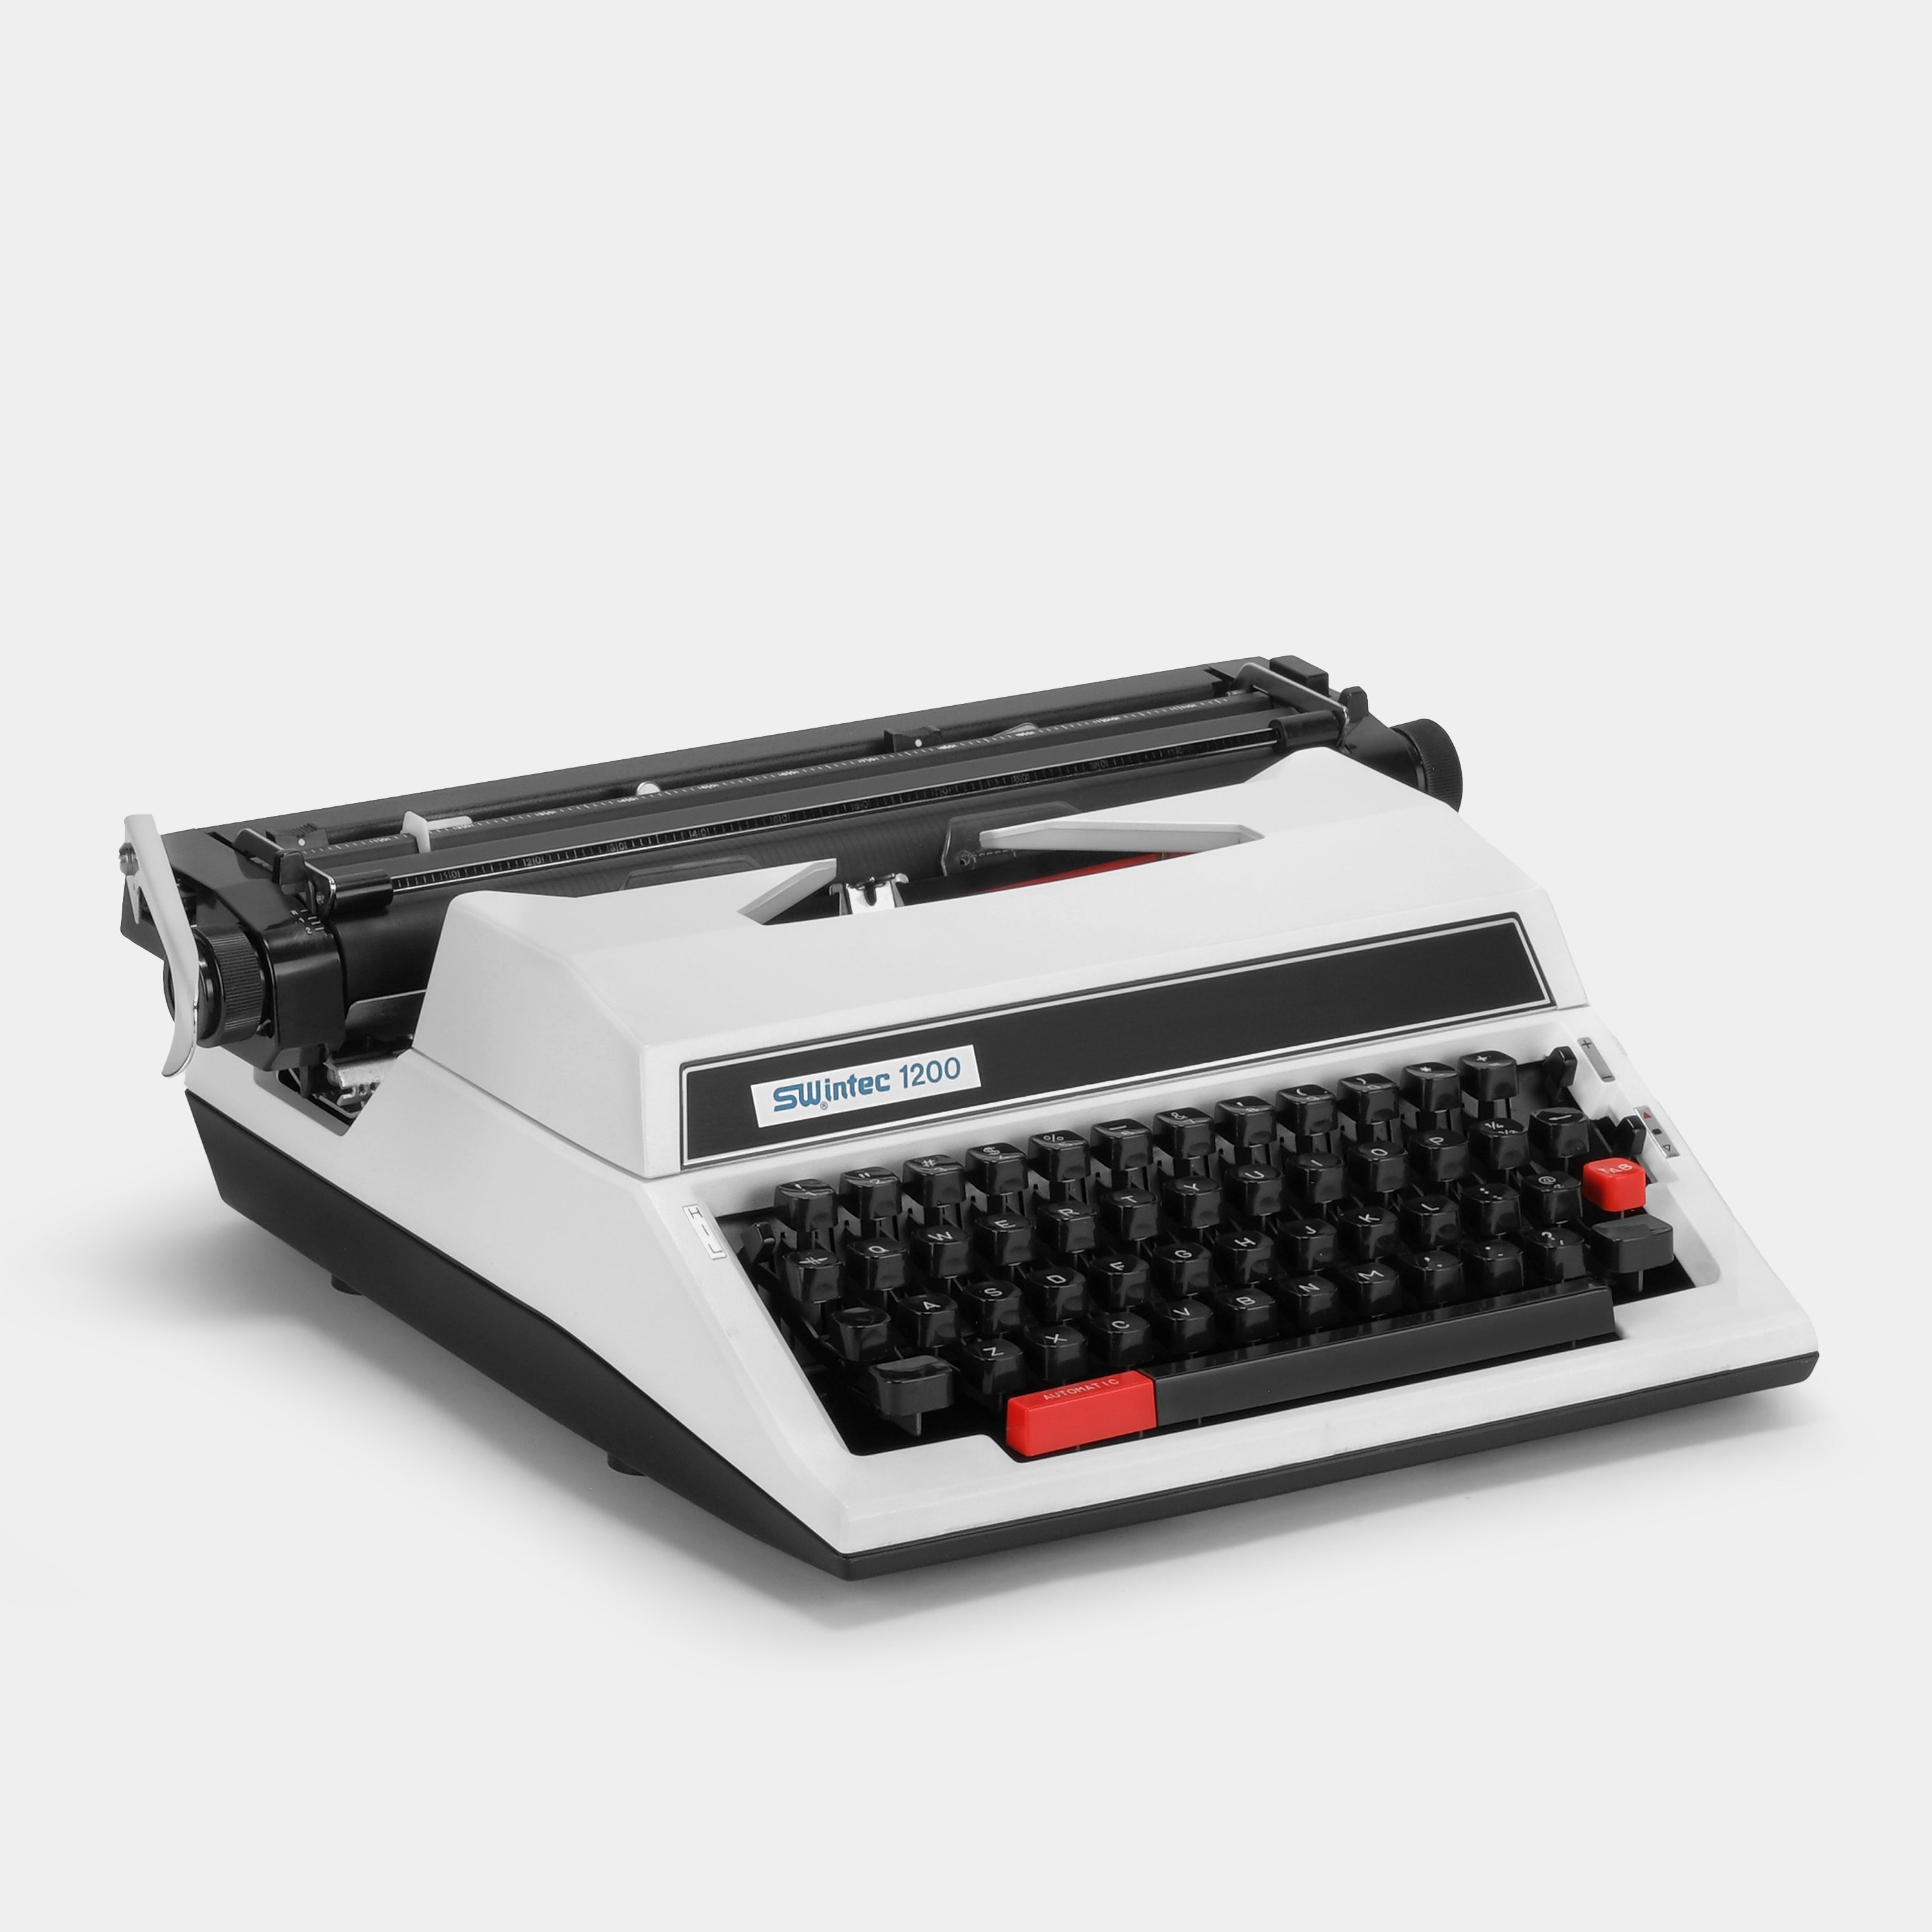 Swintec 1200 White Manual Typewriter and Case